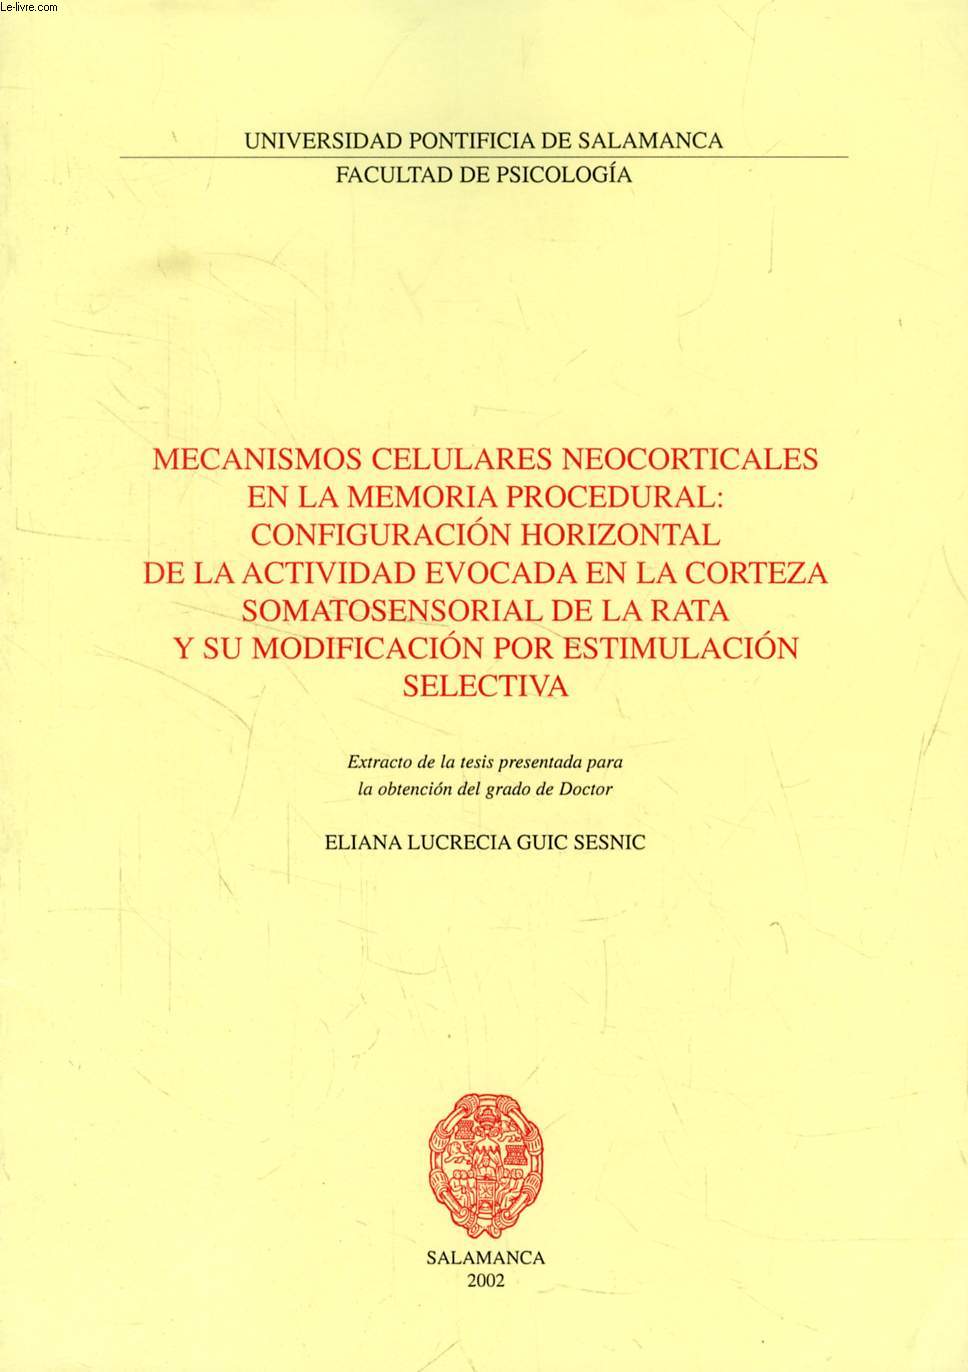 MECANISMOS CELULARES NEOCORTICALES EN LA MEMORIA PROCEDURAL: CONFIGURACION HORIZONTAL DE LA ACTIVIDAD EVOCADA EN LA CORTEZA SOMATOSENSORIAL DE LA RATA Y SU MODIFICACION POR ESTIMULACION SELECTIVA (EXTRACTO DE LA TESIS)